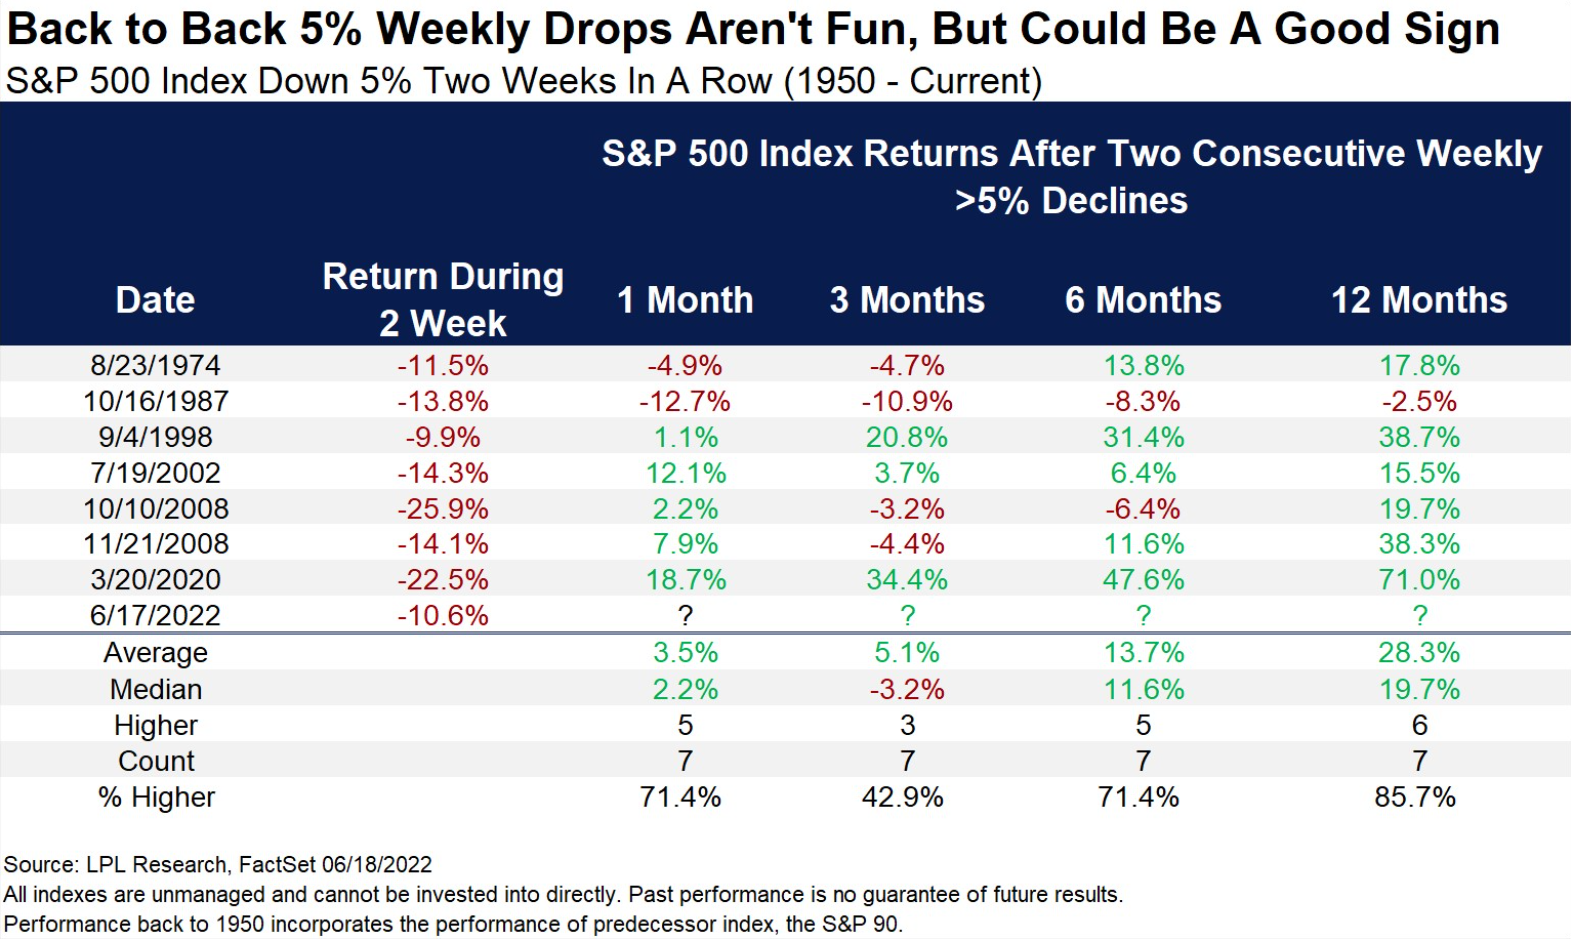 S&P 500 - vývoj po dvou týdnech alespoň pětiprocentních poklesů v řadě